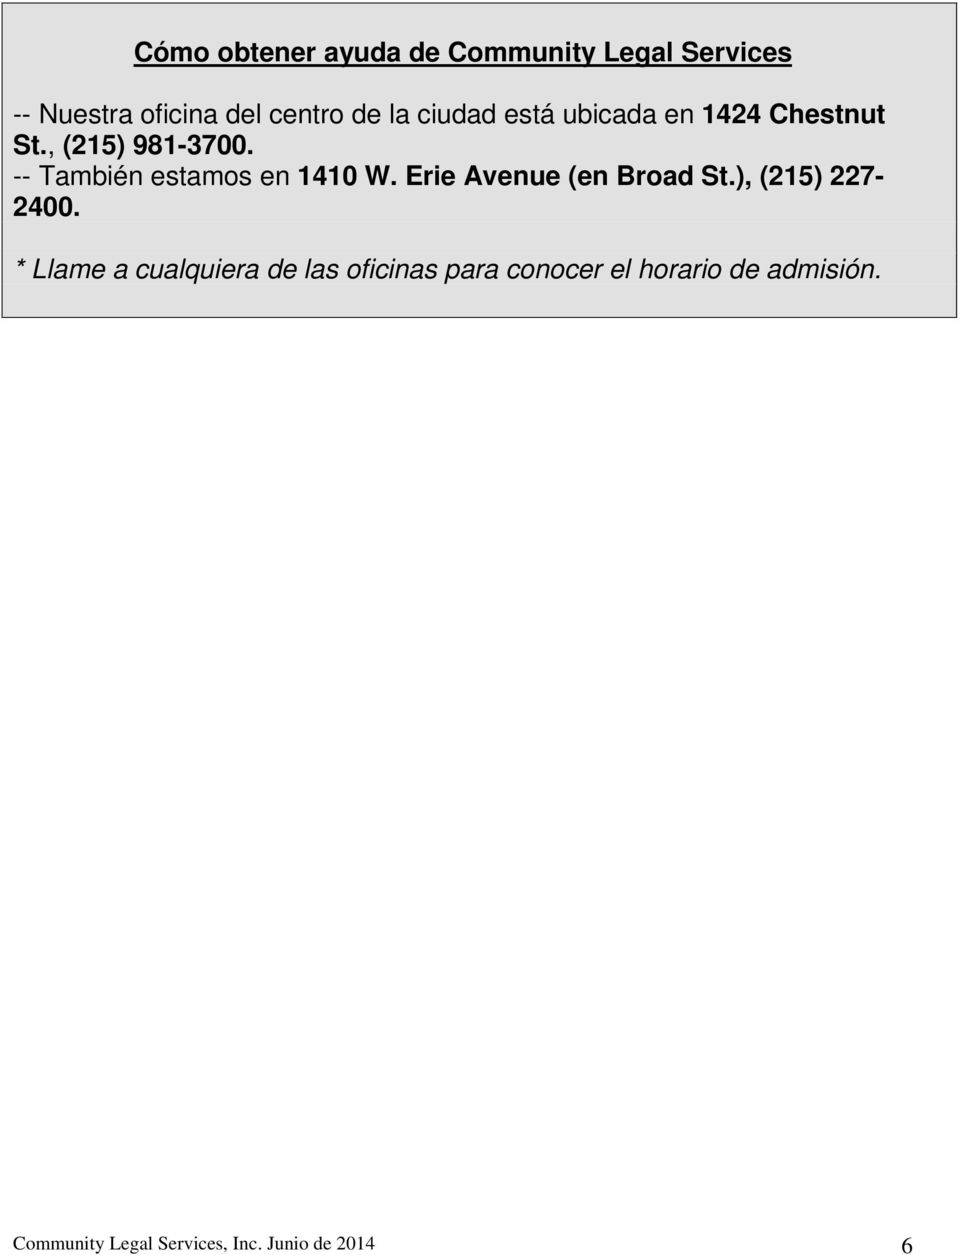 -- También estamos en 1410 W. Erie Avenue (en Broad St.), (215) 227-2400.